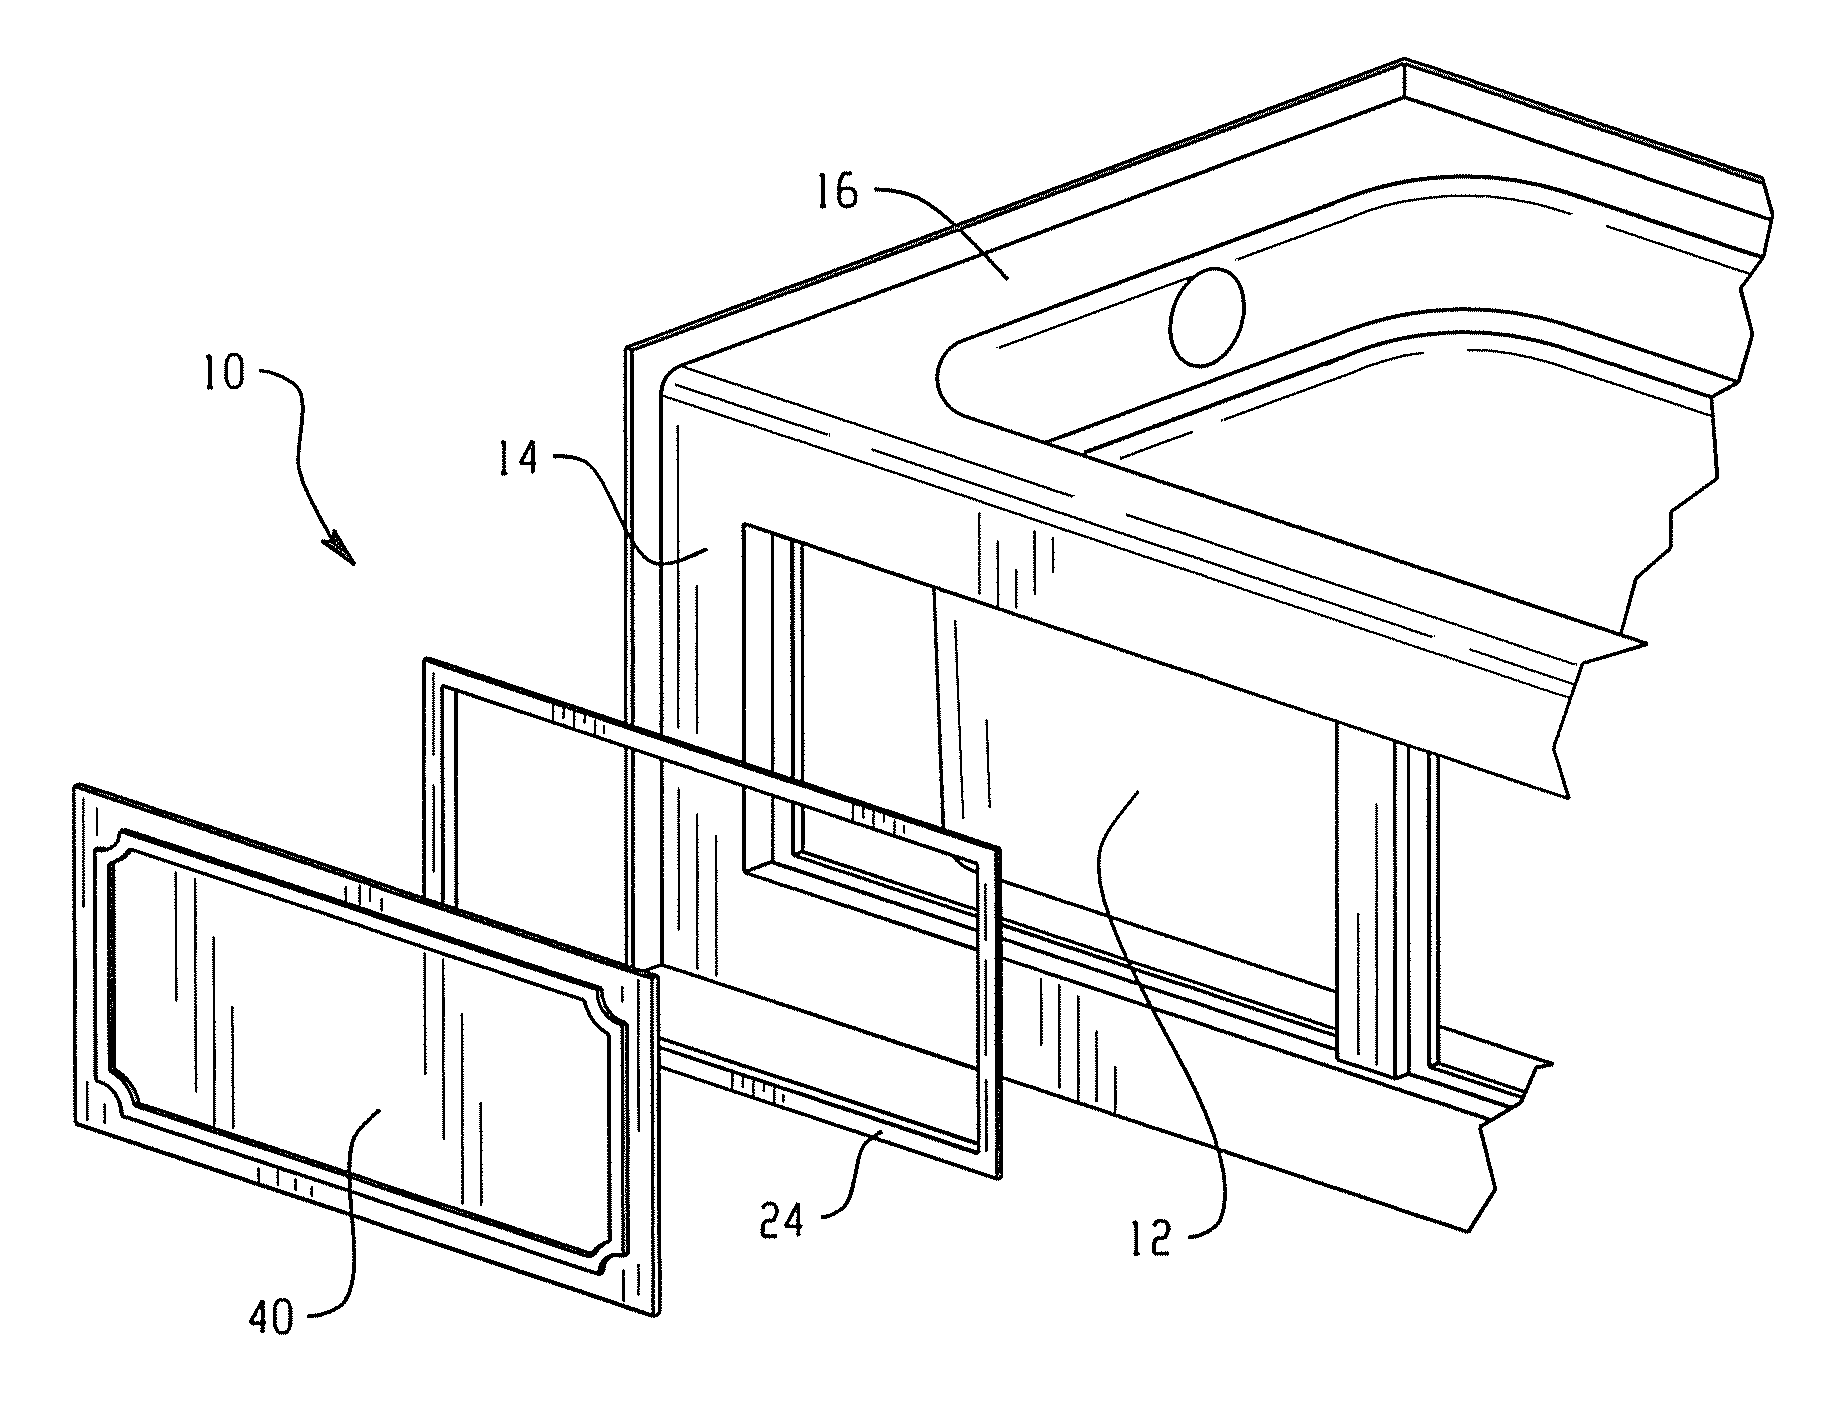 Tub skirt panel system